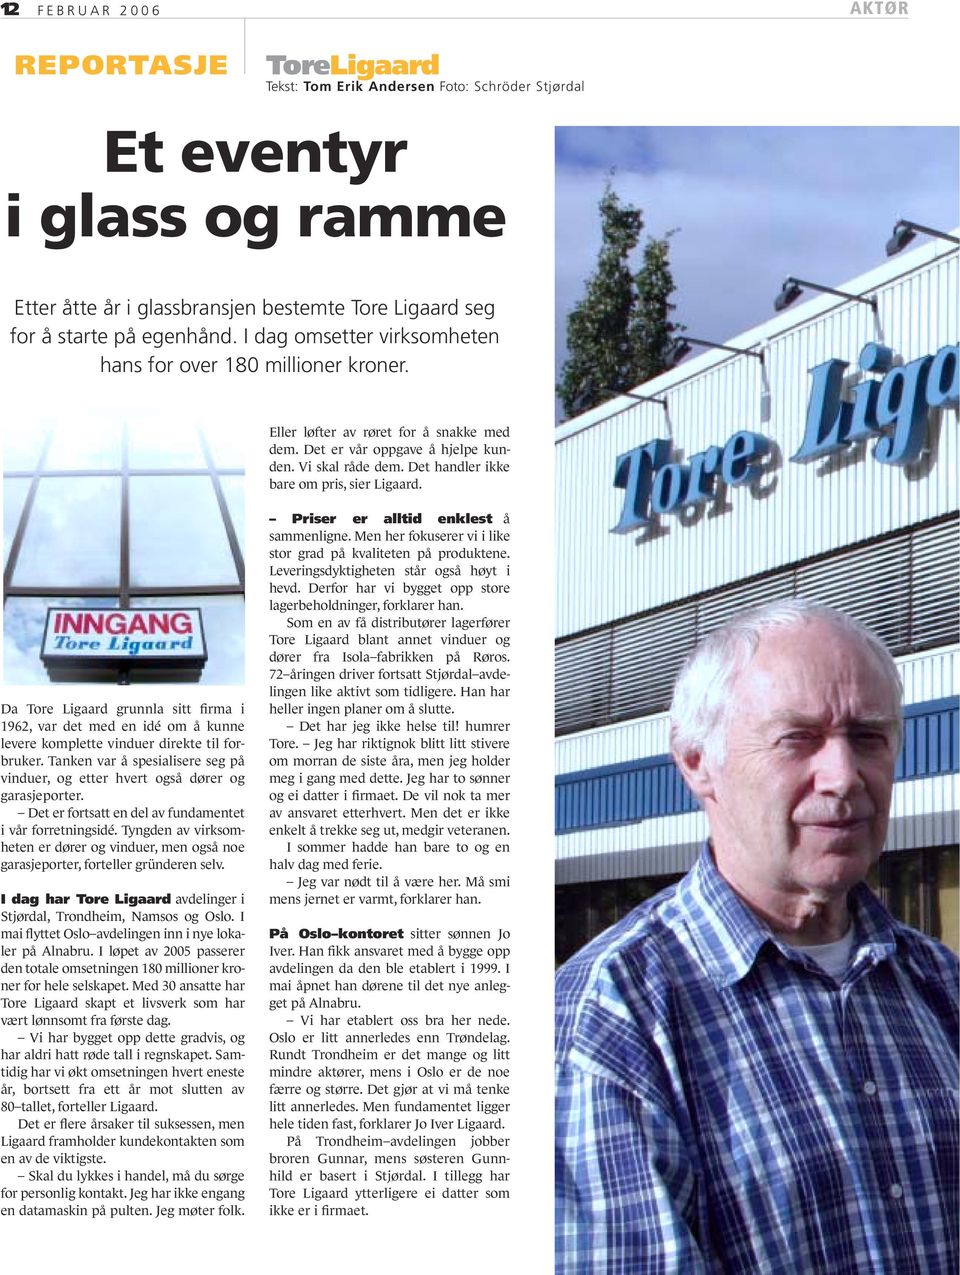 Det handler ikke bare om pris, sier Ligaard. Da Tore Ligaard grunnla sitt firma i 1962, var det med en idé om å kunne levere komplette vinduer direkte til forbruker.